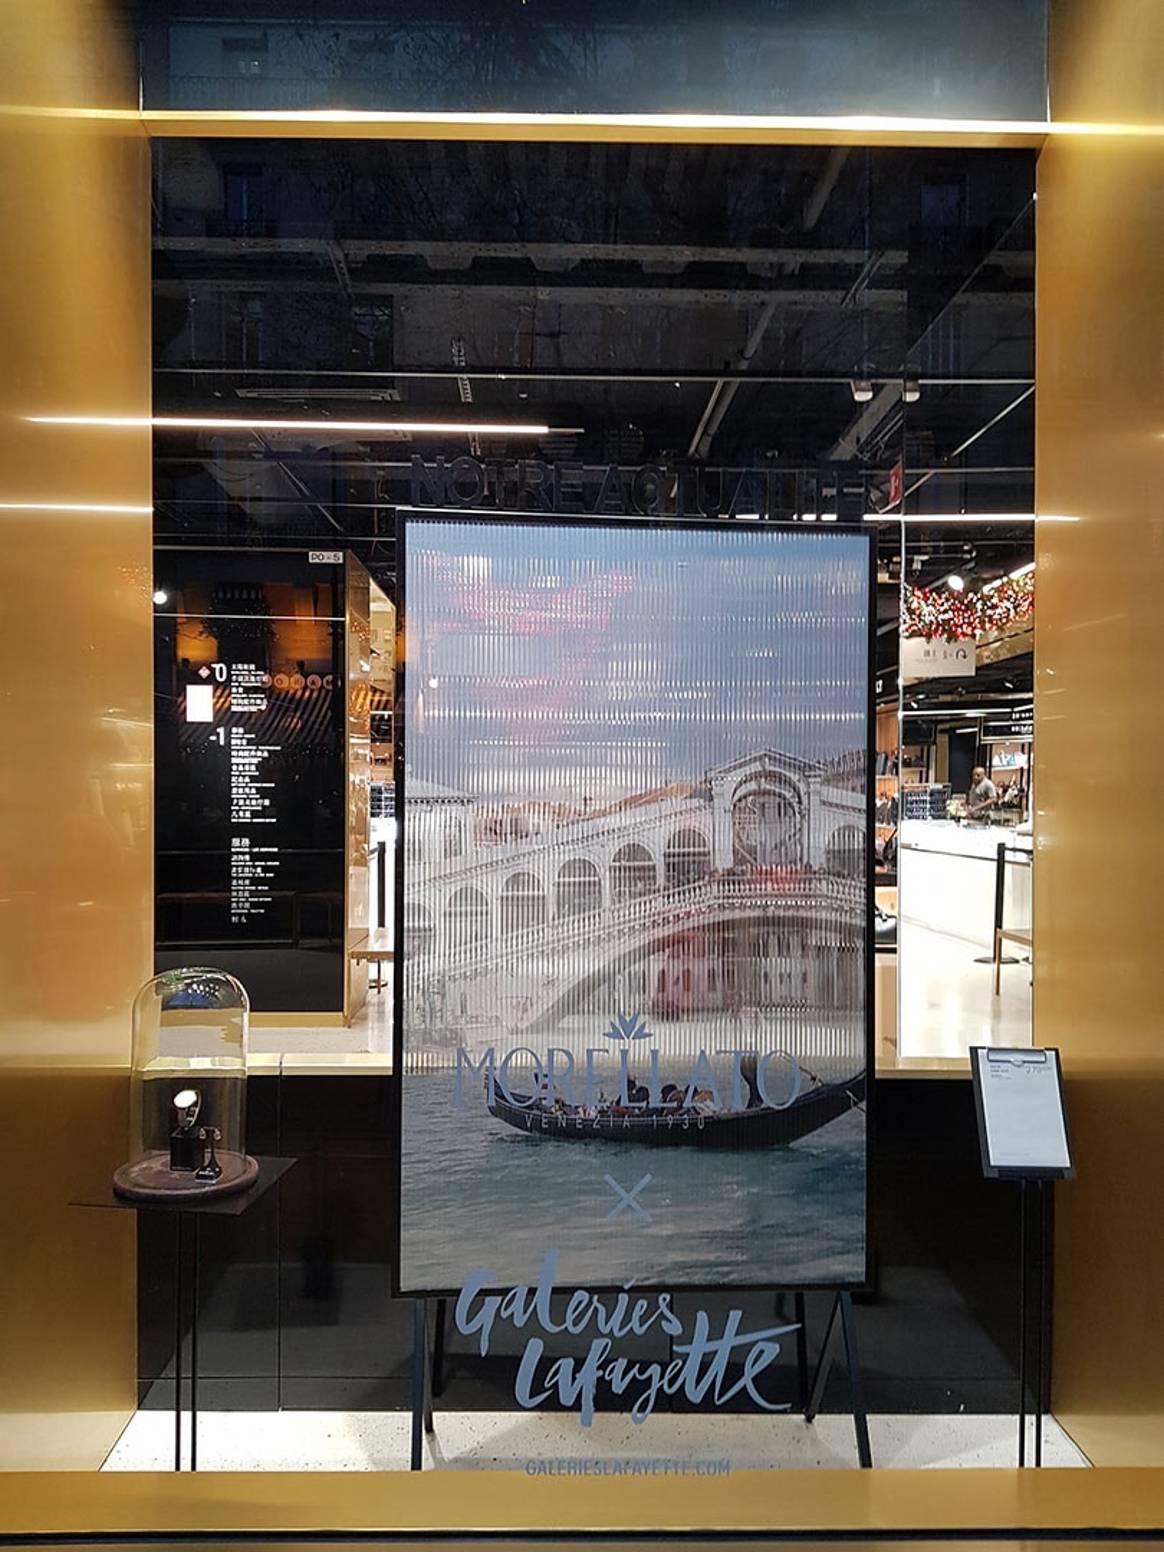 En images : Morellato ouvre un pop-up store aux Galeries Lafayette d’Haussmann